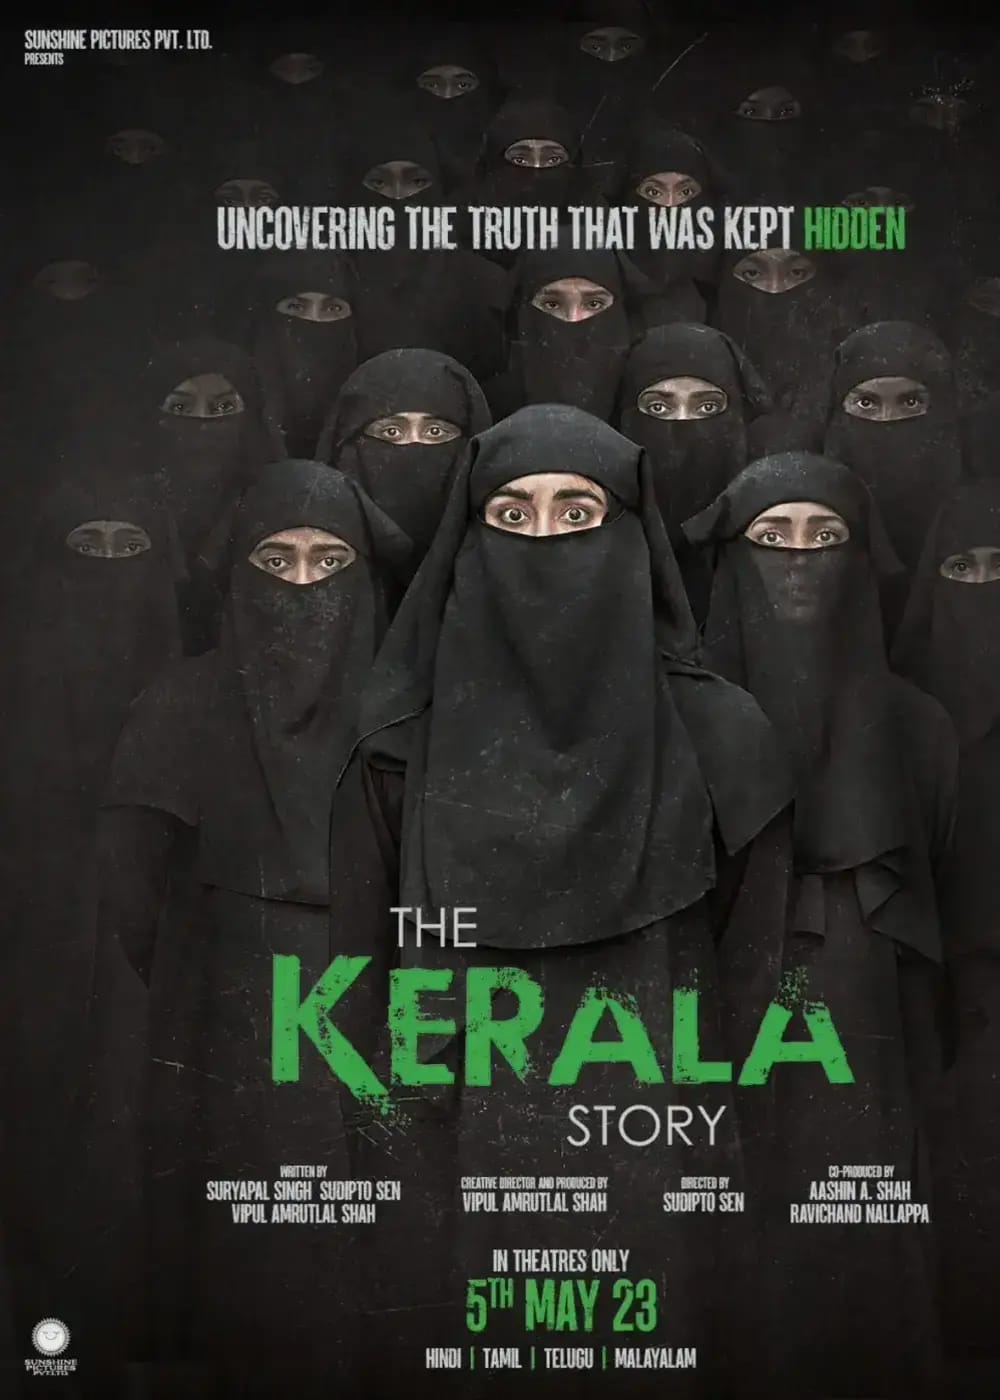 Kerala Story